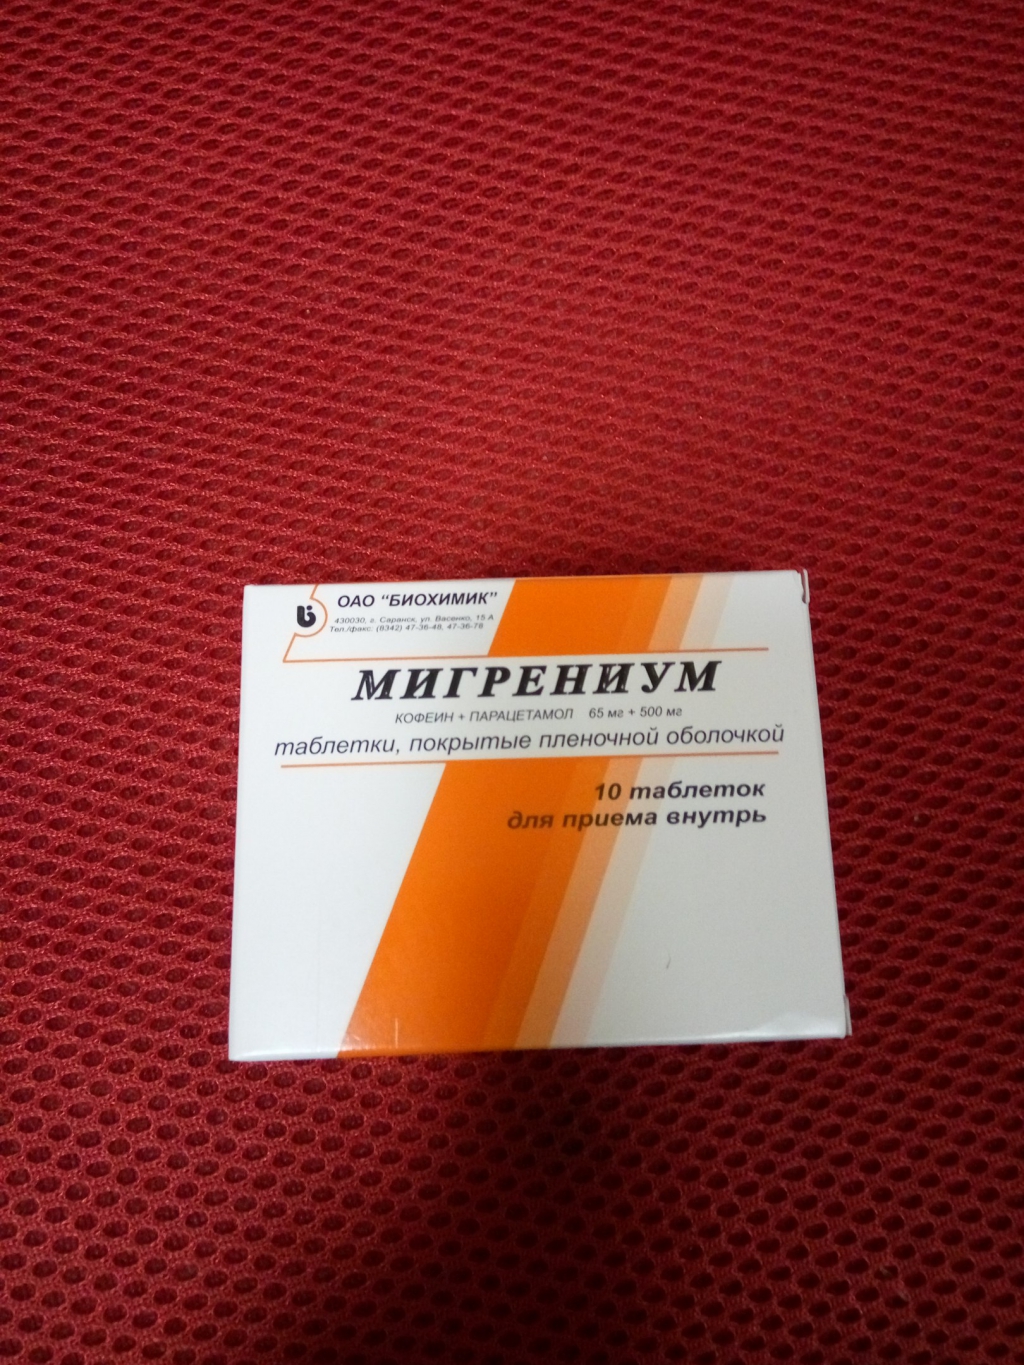 Мигрениум таблетки цена инструкция по применению взрослым. Лекарство Мигрениум. Обезболивающие таблетки Мигрениум. Мигрениум таблетки, покрытые пленочной оболочкой. Мигрениум биохимик.